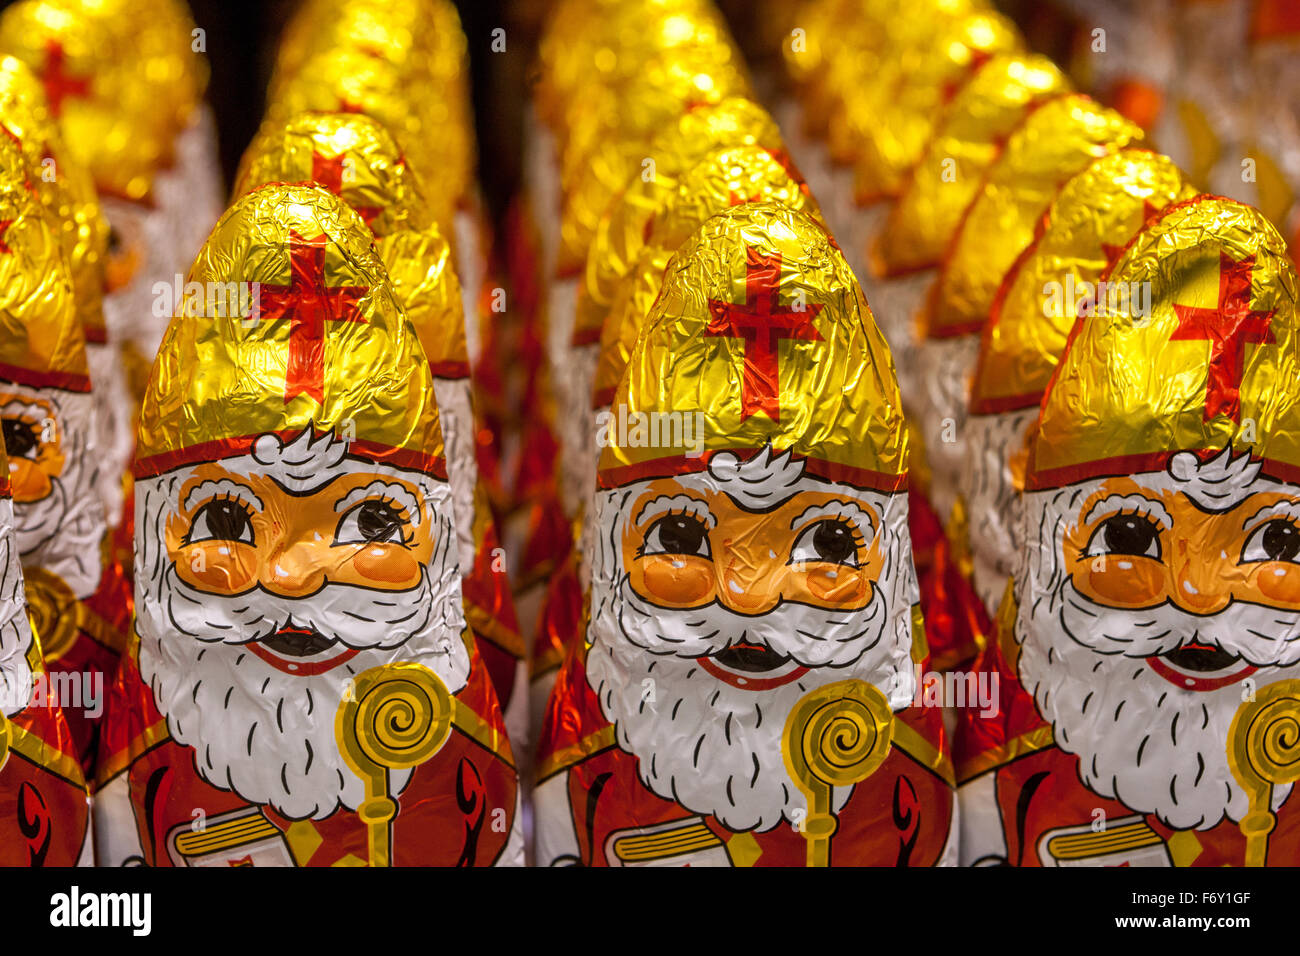 Schokoladen-Figuren des Heiligen Nikolaus in einem Supermarkt Regal angezeigt Stockfoto